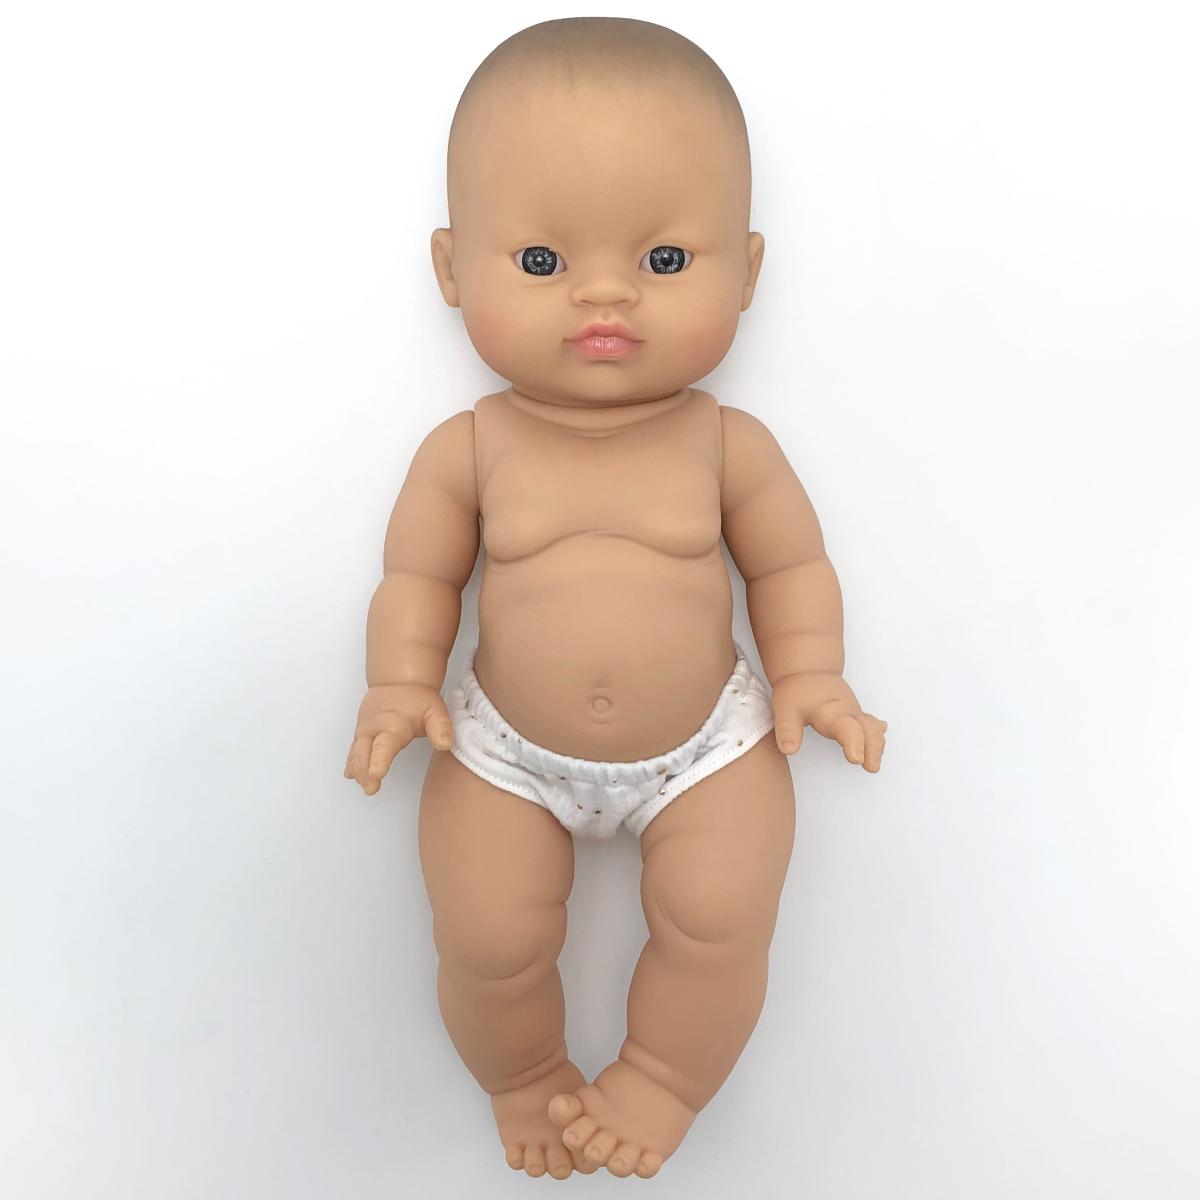 Poupon bébé fille asiatique et accessoires (21 cm)